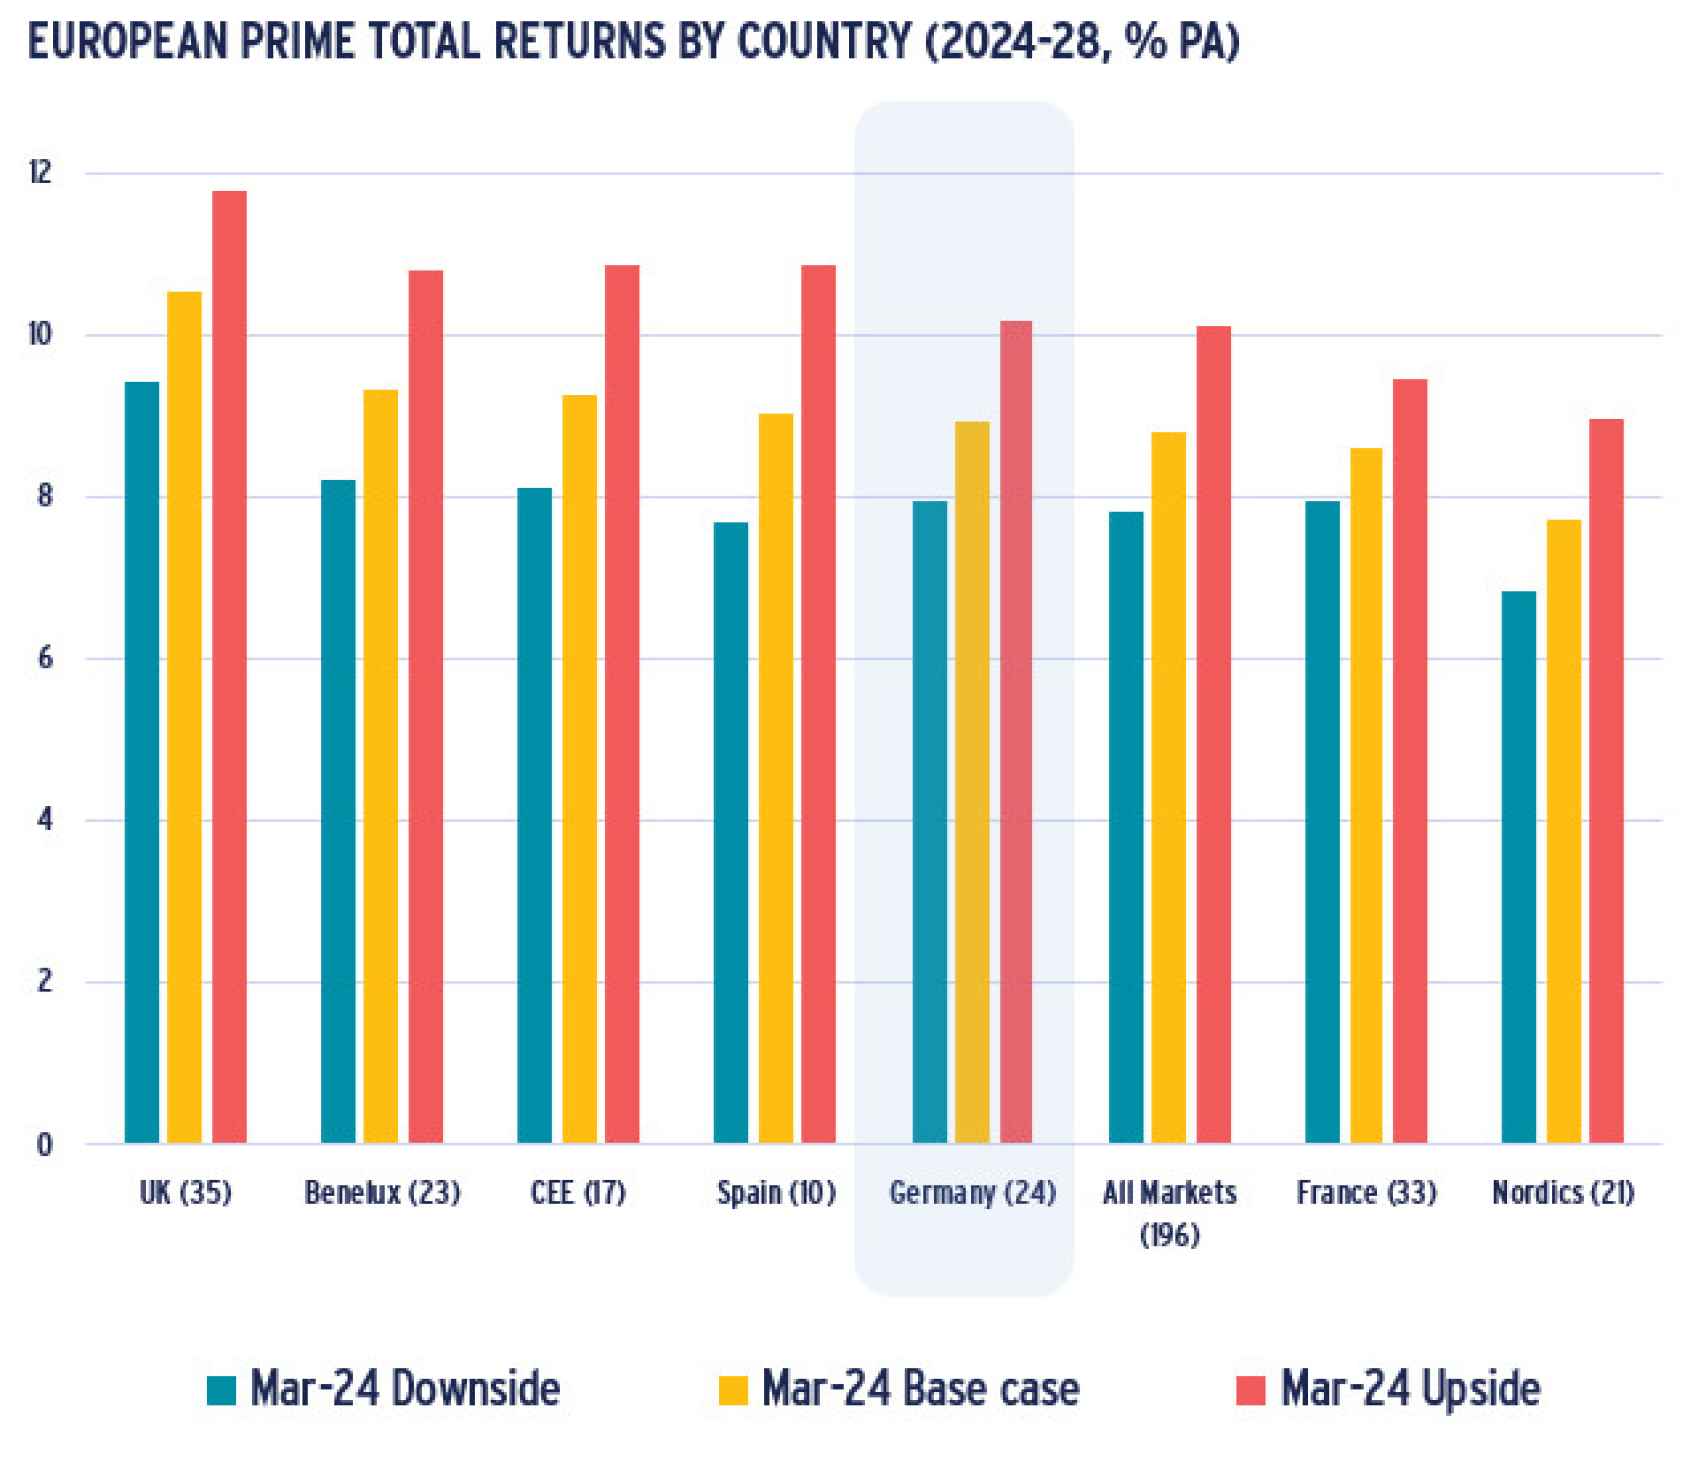 Rentabilidades dentro del sector prime en Europa para el periodo 2024-2028.